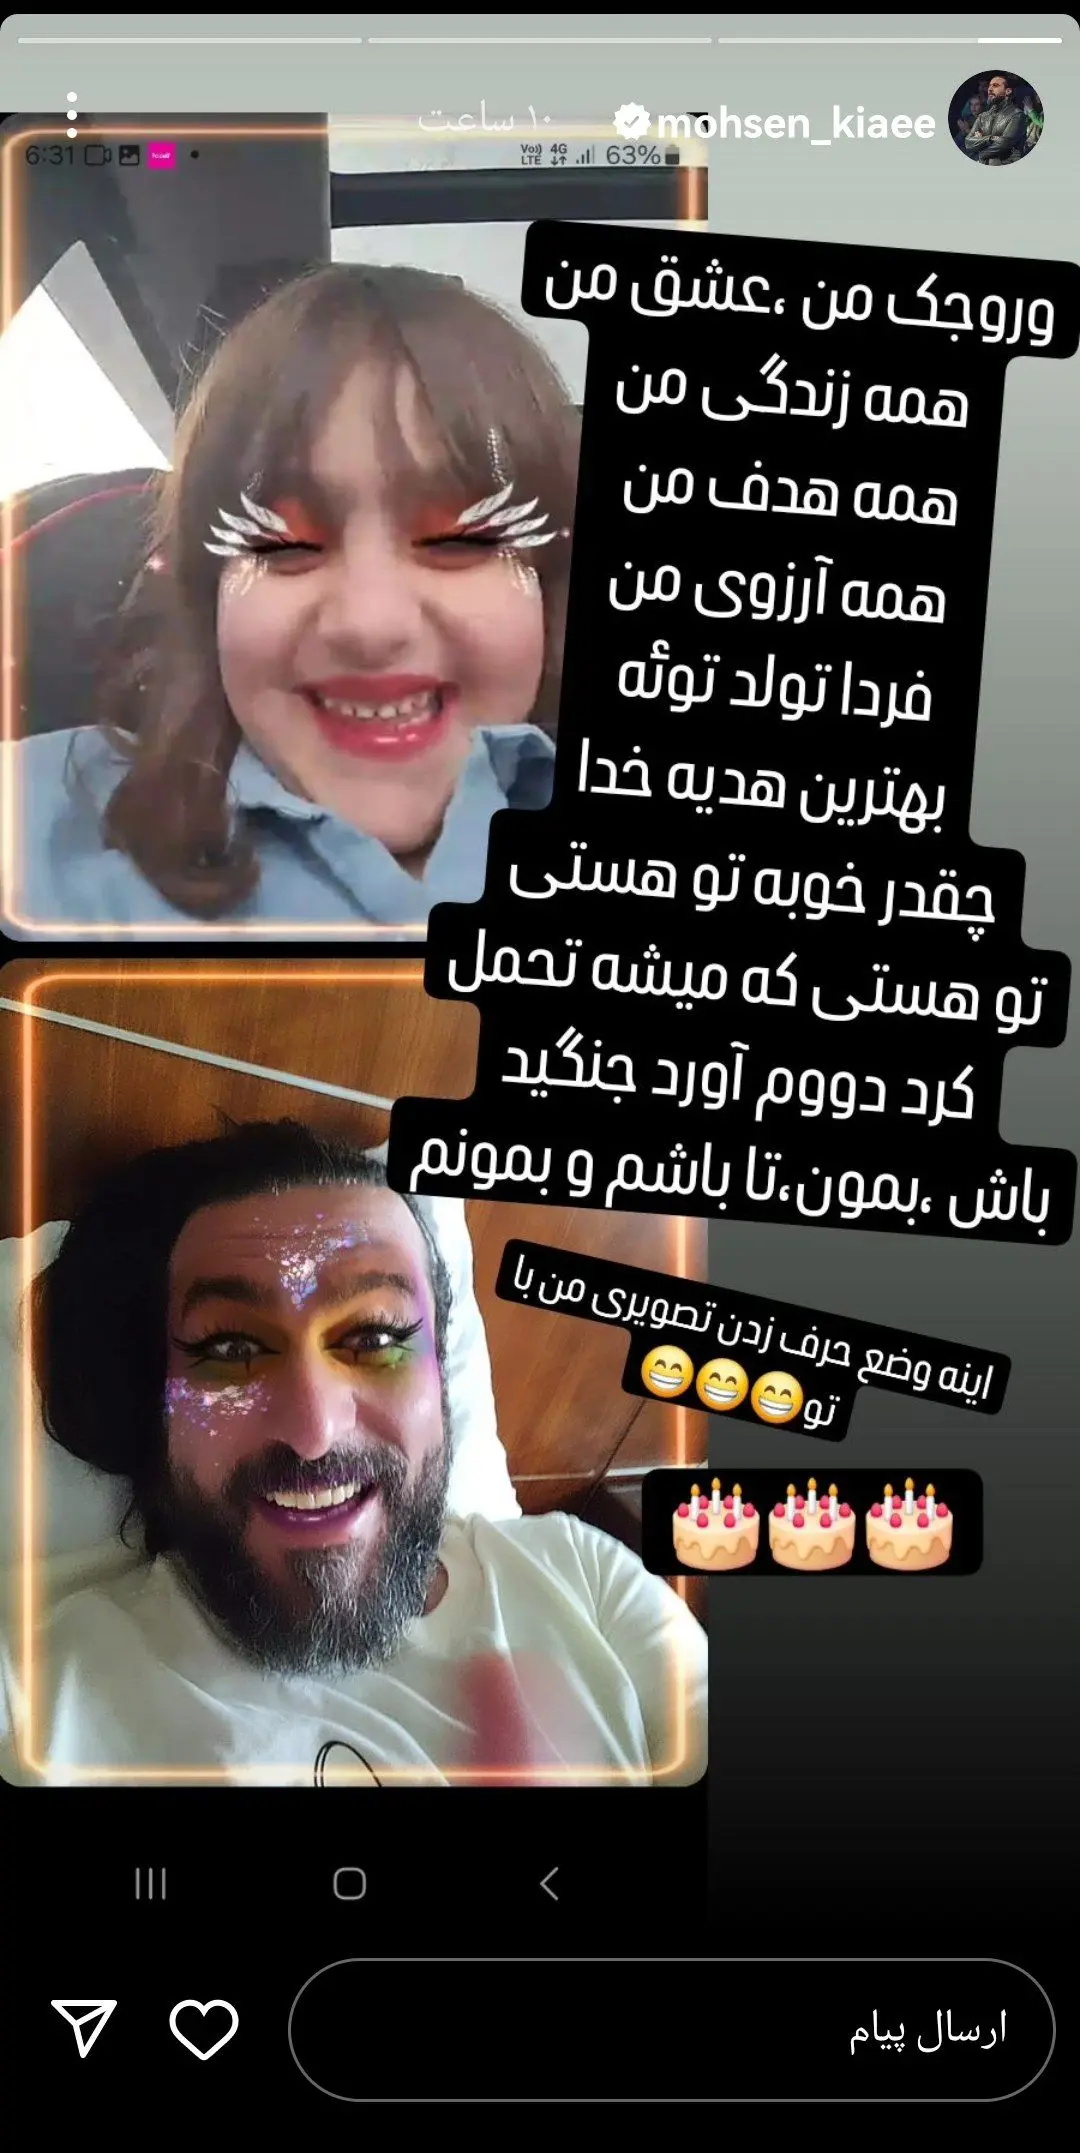 تبریک تولد متفاوت برای دختر محسن کیایی